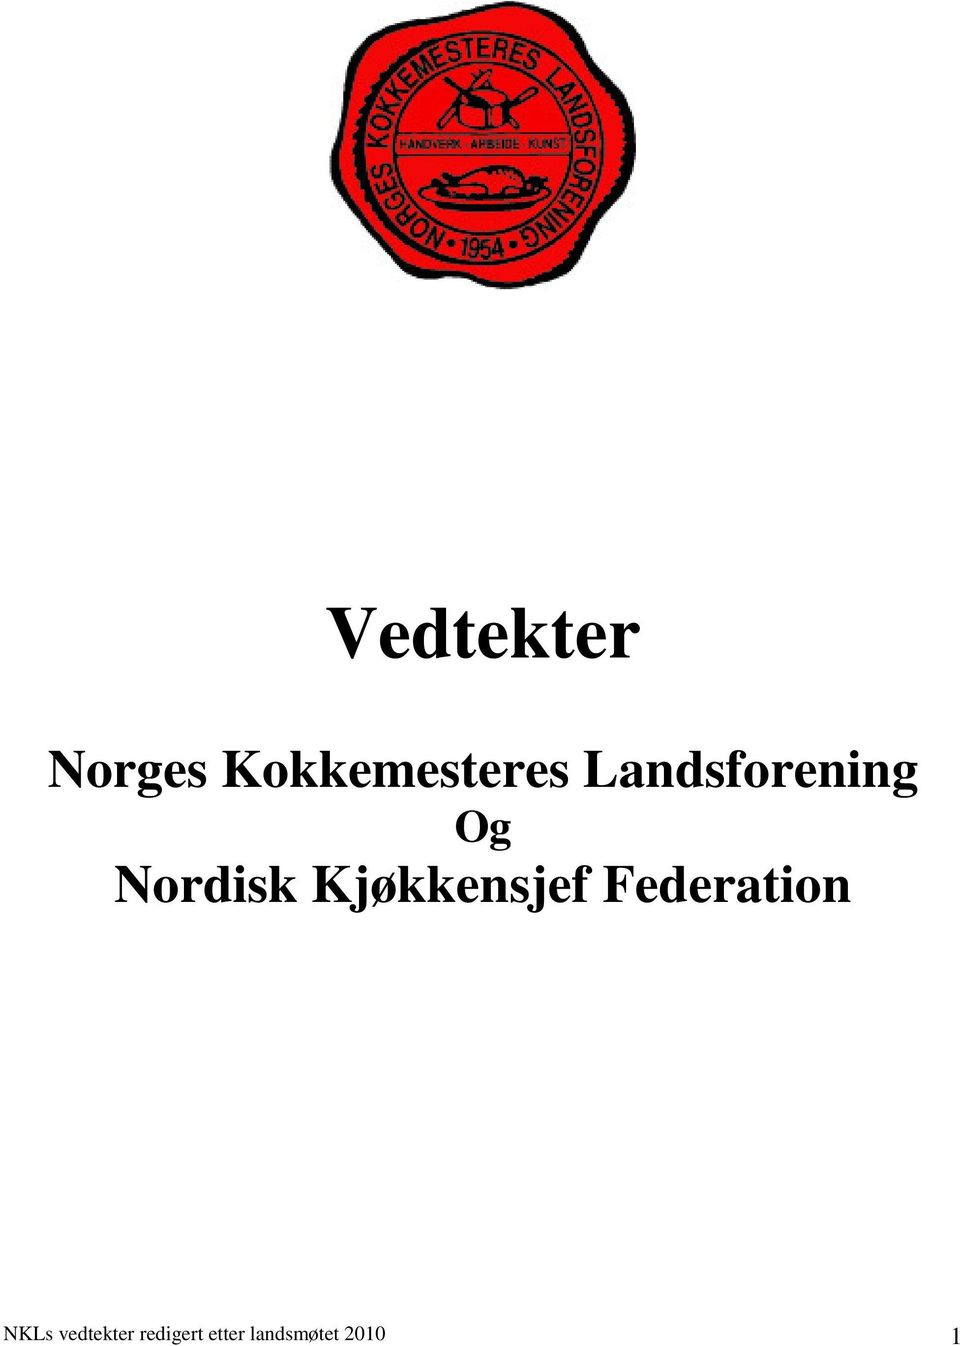 Kjøkkensjef Federation NKLs